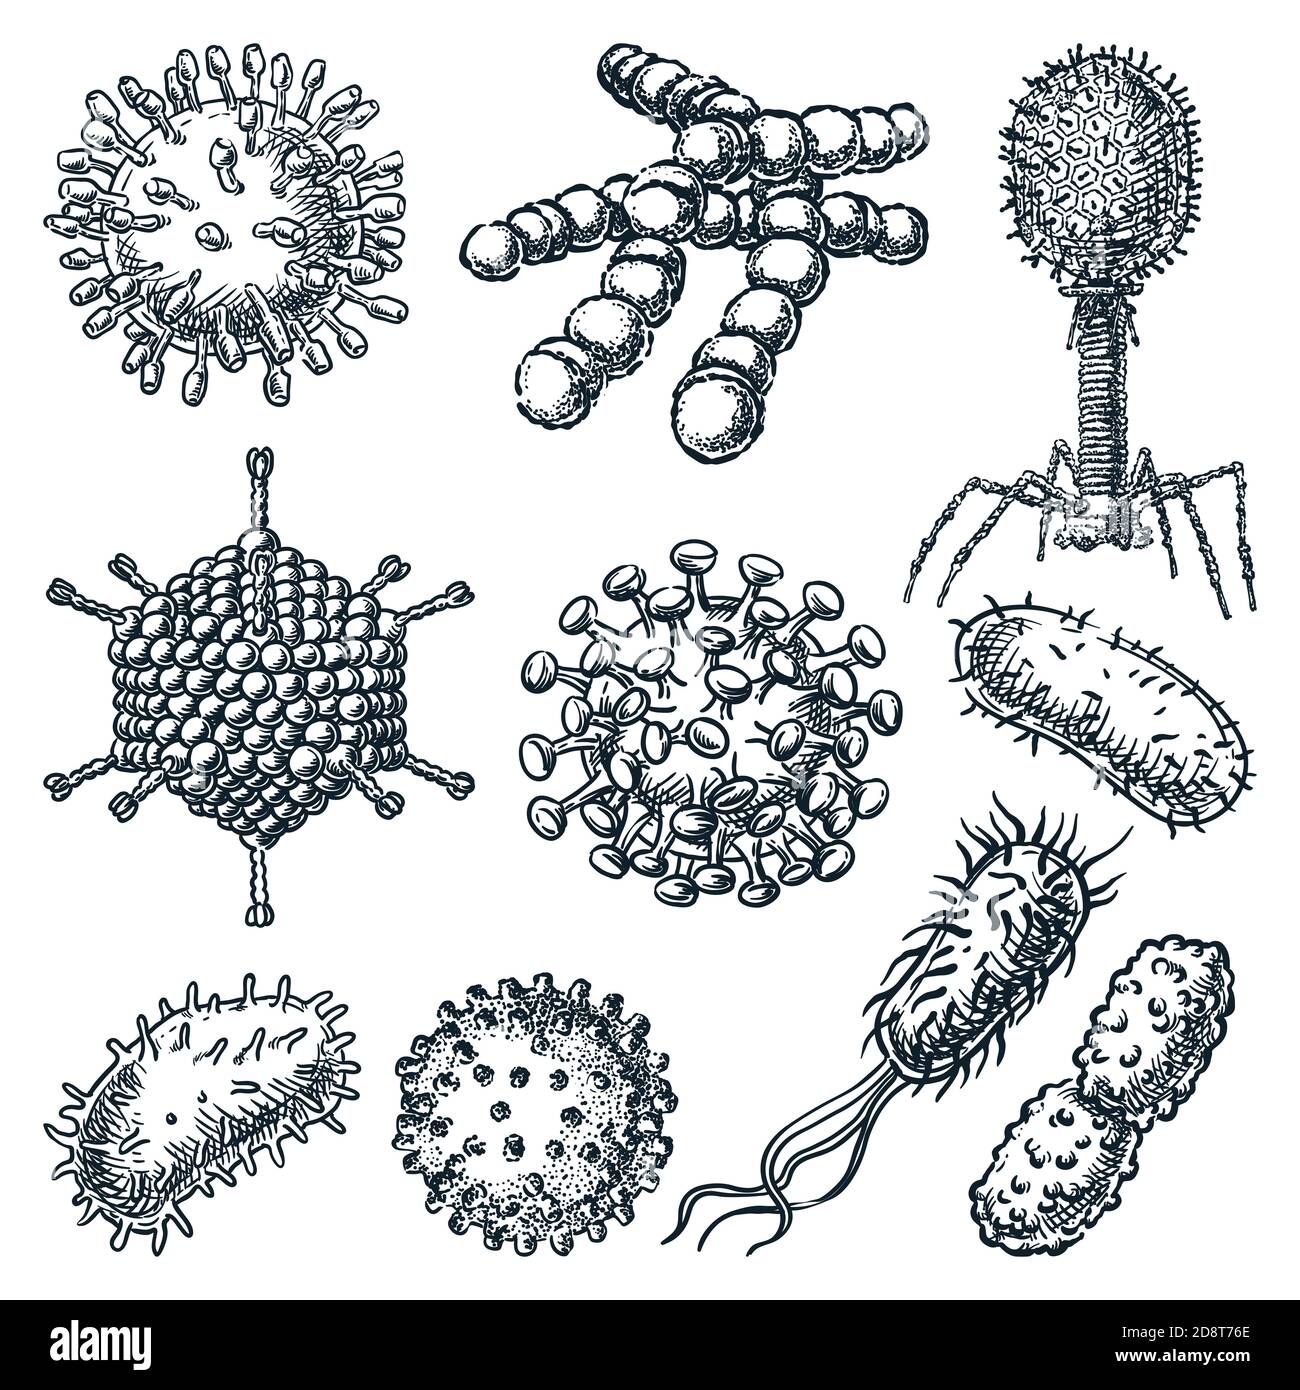 Virus et ensemble de bactéries isolés sur fond blanc. Illustration d'esquisse vectorielle dessinée à la main. Hépatite, rotavirus, coronavirus, bacille Koch, VIH A. Illustration de Vecteur